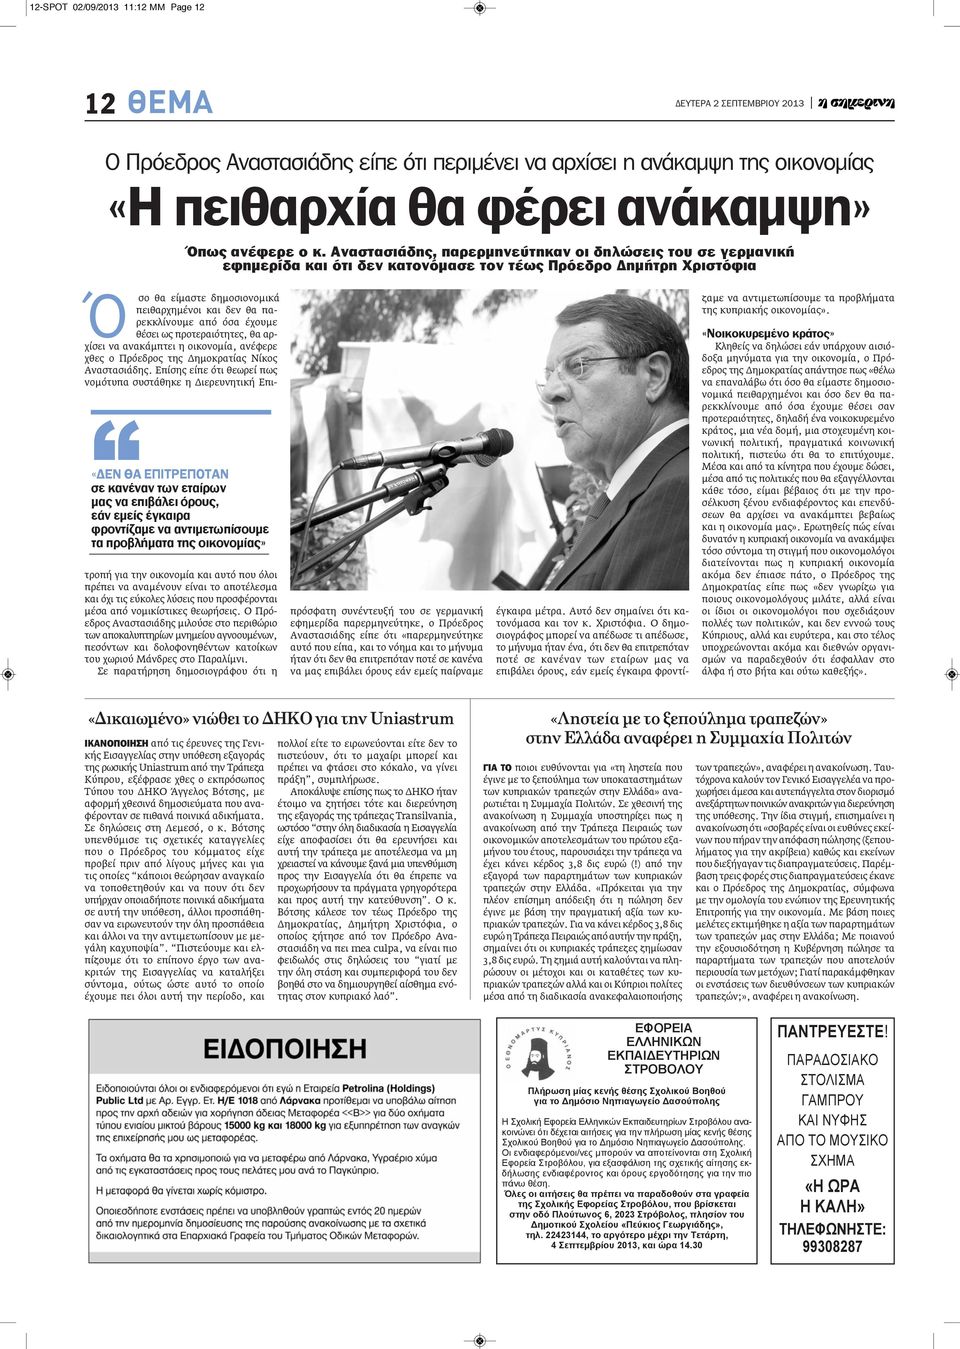 προτεραιότητες, θα αρχίσει να ανακάμπτει η οικονομία, ανέφερε χθες ο Πρόεδρος της Δημοκρατίας Νίκος Αναστασιάδης.